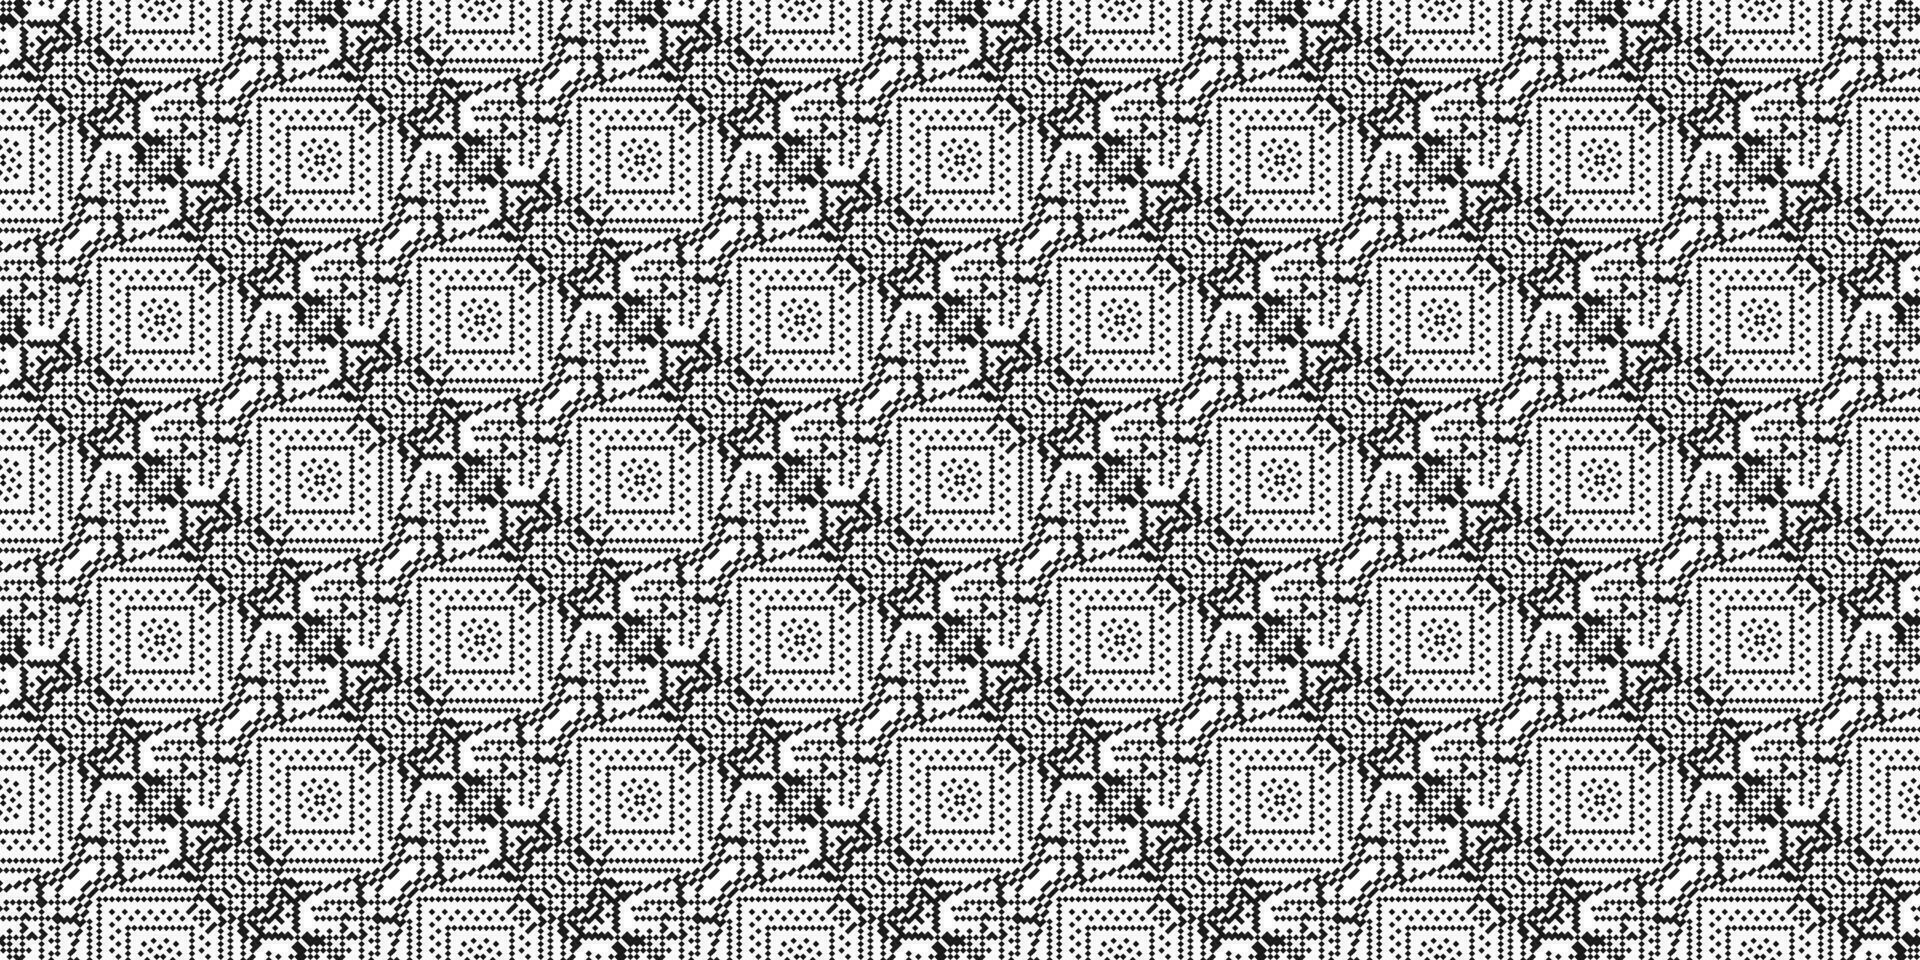 monochroom meetkundig rooster pixel kunst achtergrond modern zwart en wit abstract mozaïek- structuur vector